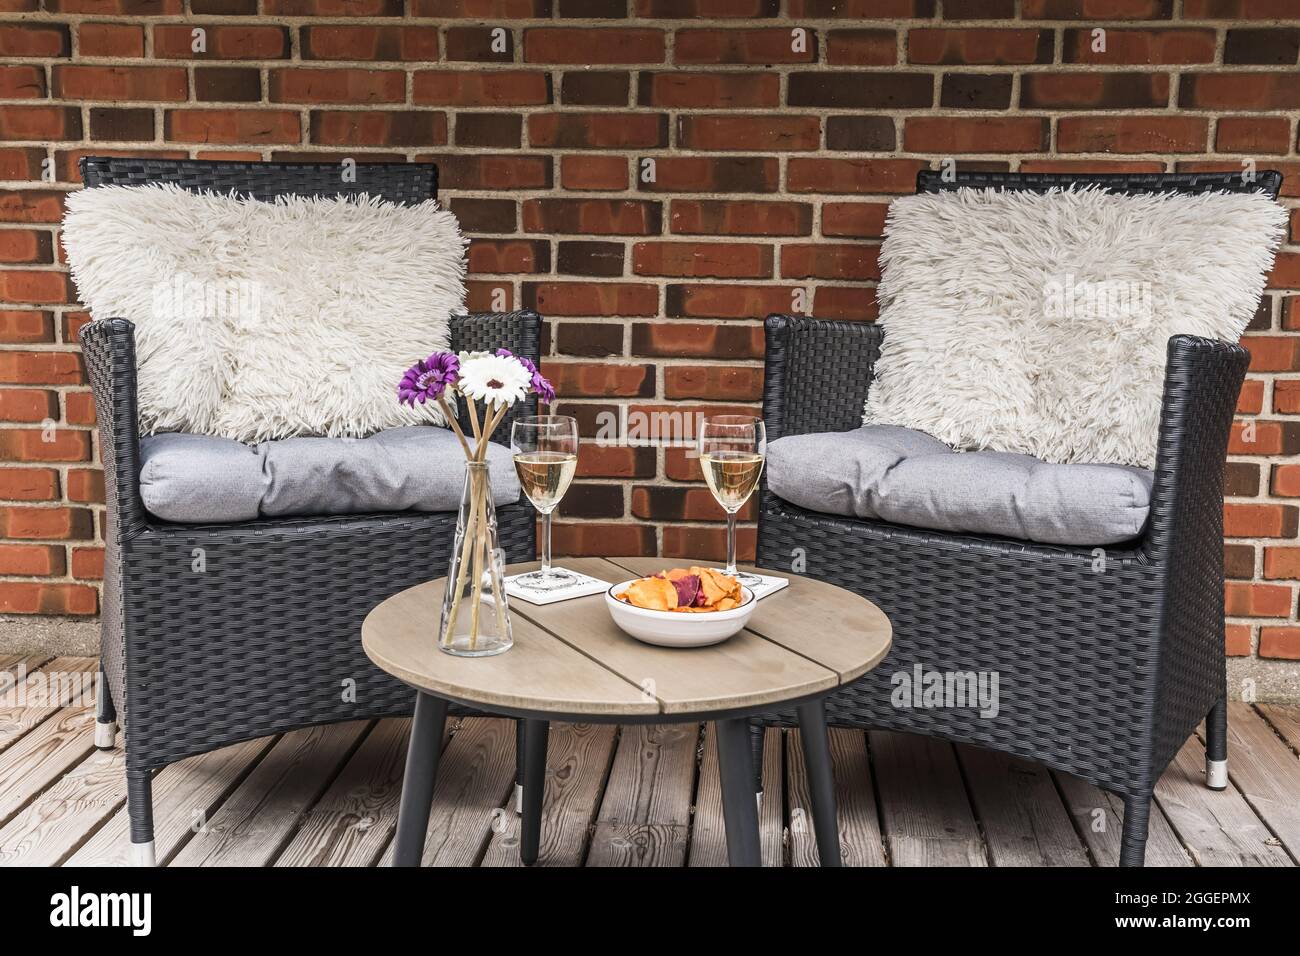 Zwei Rattanstühle mit Kissen und ein kleiner Tisch mit Weingläsern auf  einer Holzterrasse, Steinwand im Hintergrund Stockfotografie - Alamy